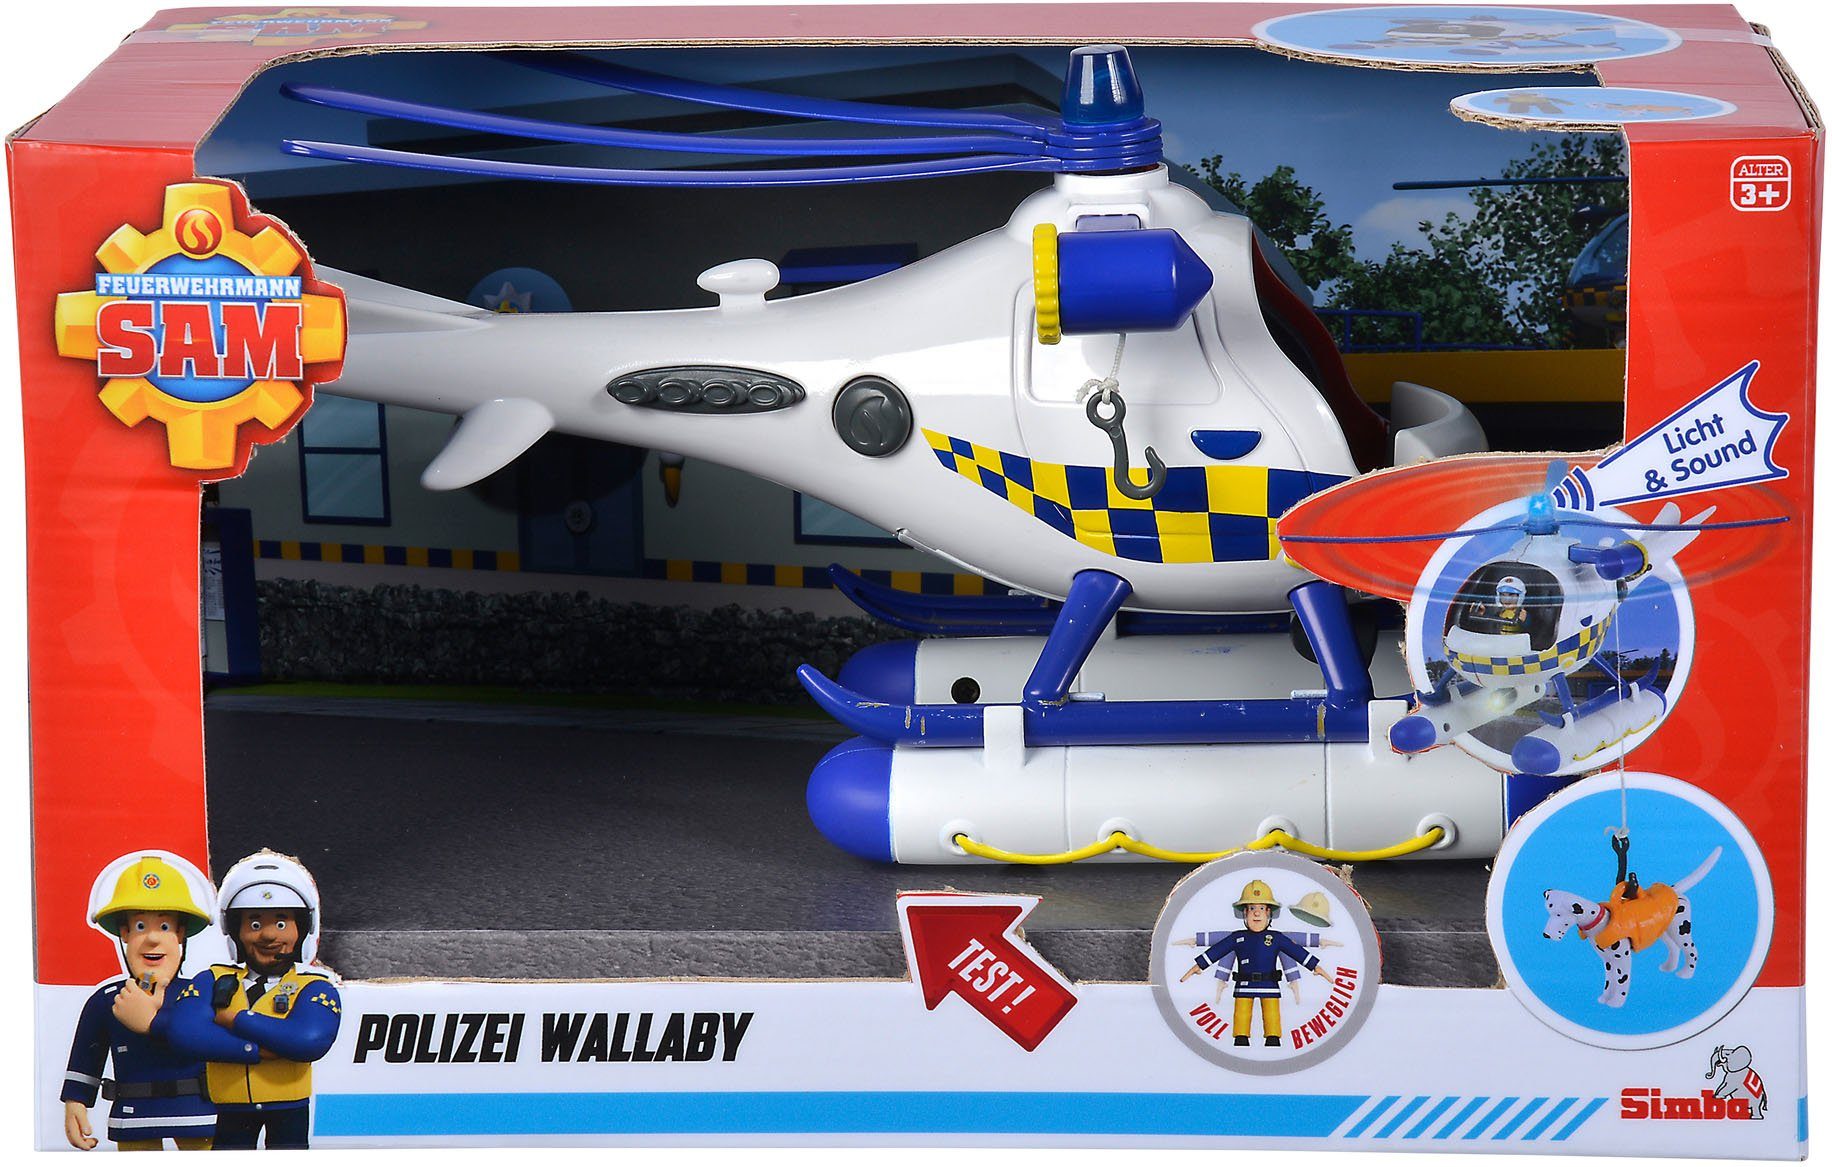 SIMBA Spielzeug-Hubschrauber Пожежний Сем, Polizei Wallaby, mit Licht- und Soundeffekten